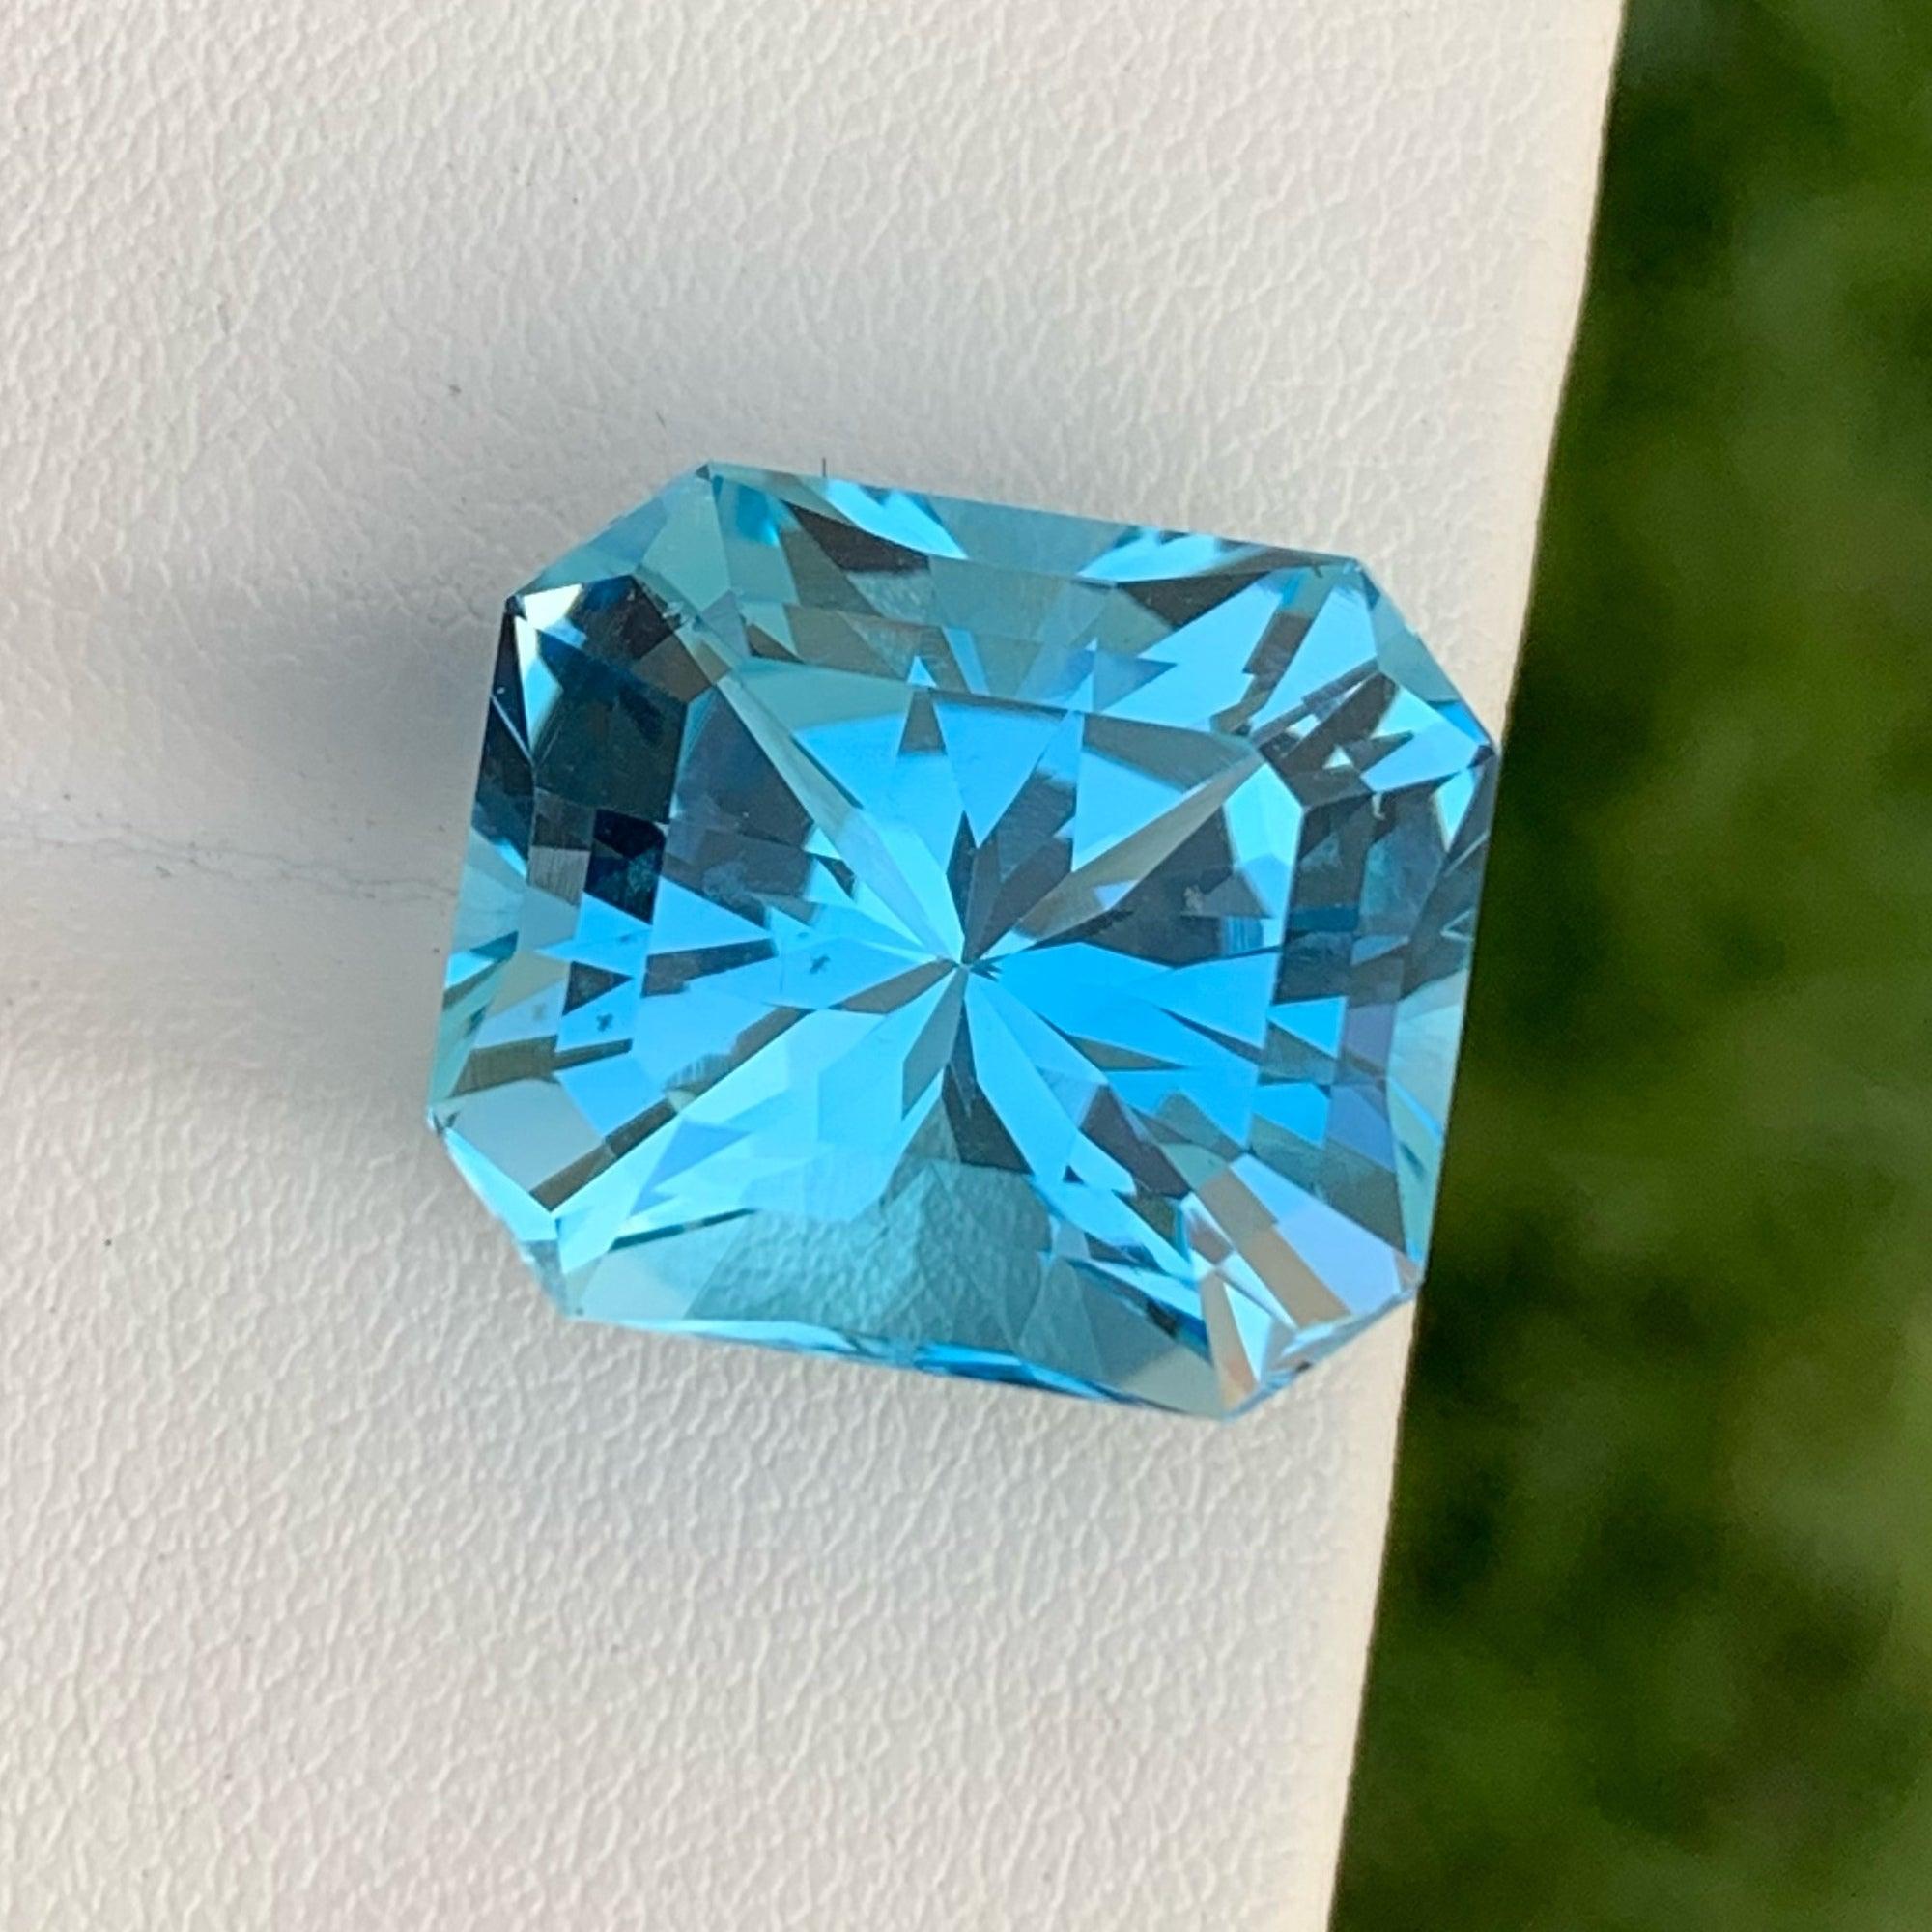 Radiant Cut Radiantly Swiss Blue Topaz Gemstone 24.65 Carats Quality Stone Topaz Jewelry For Sale